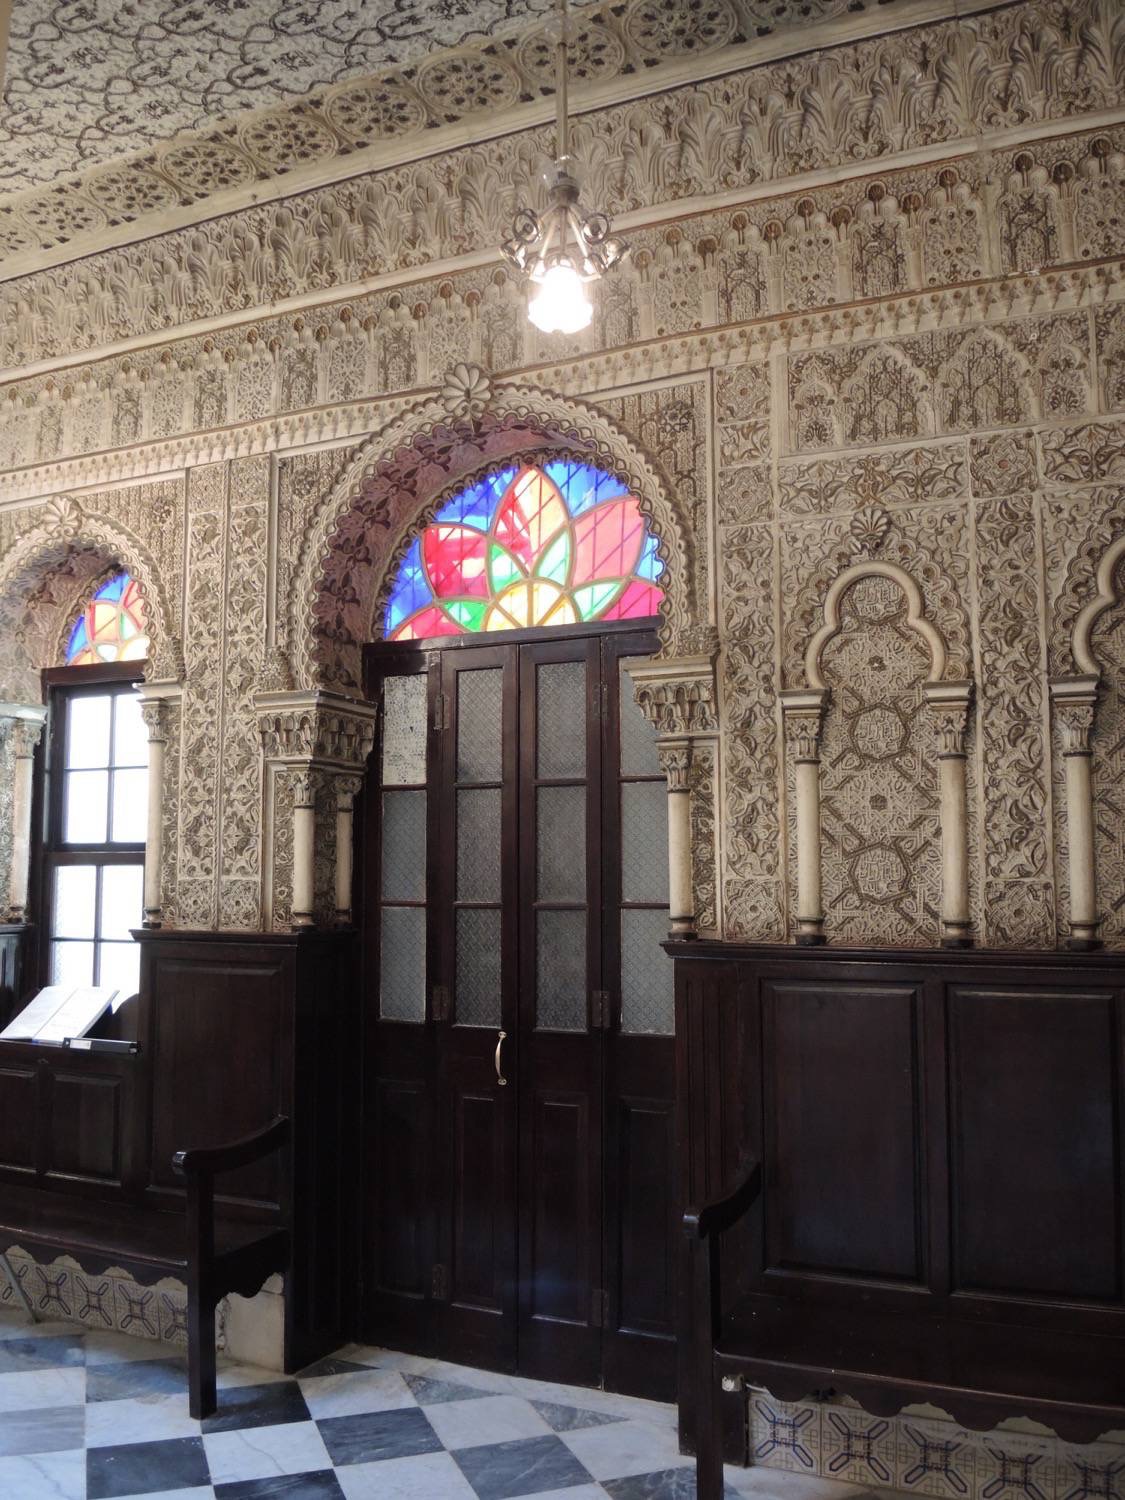 Interior view of the door